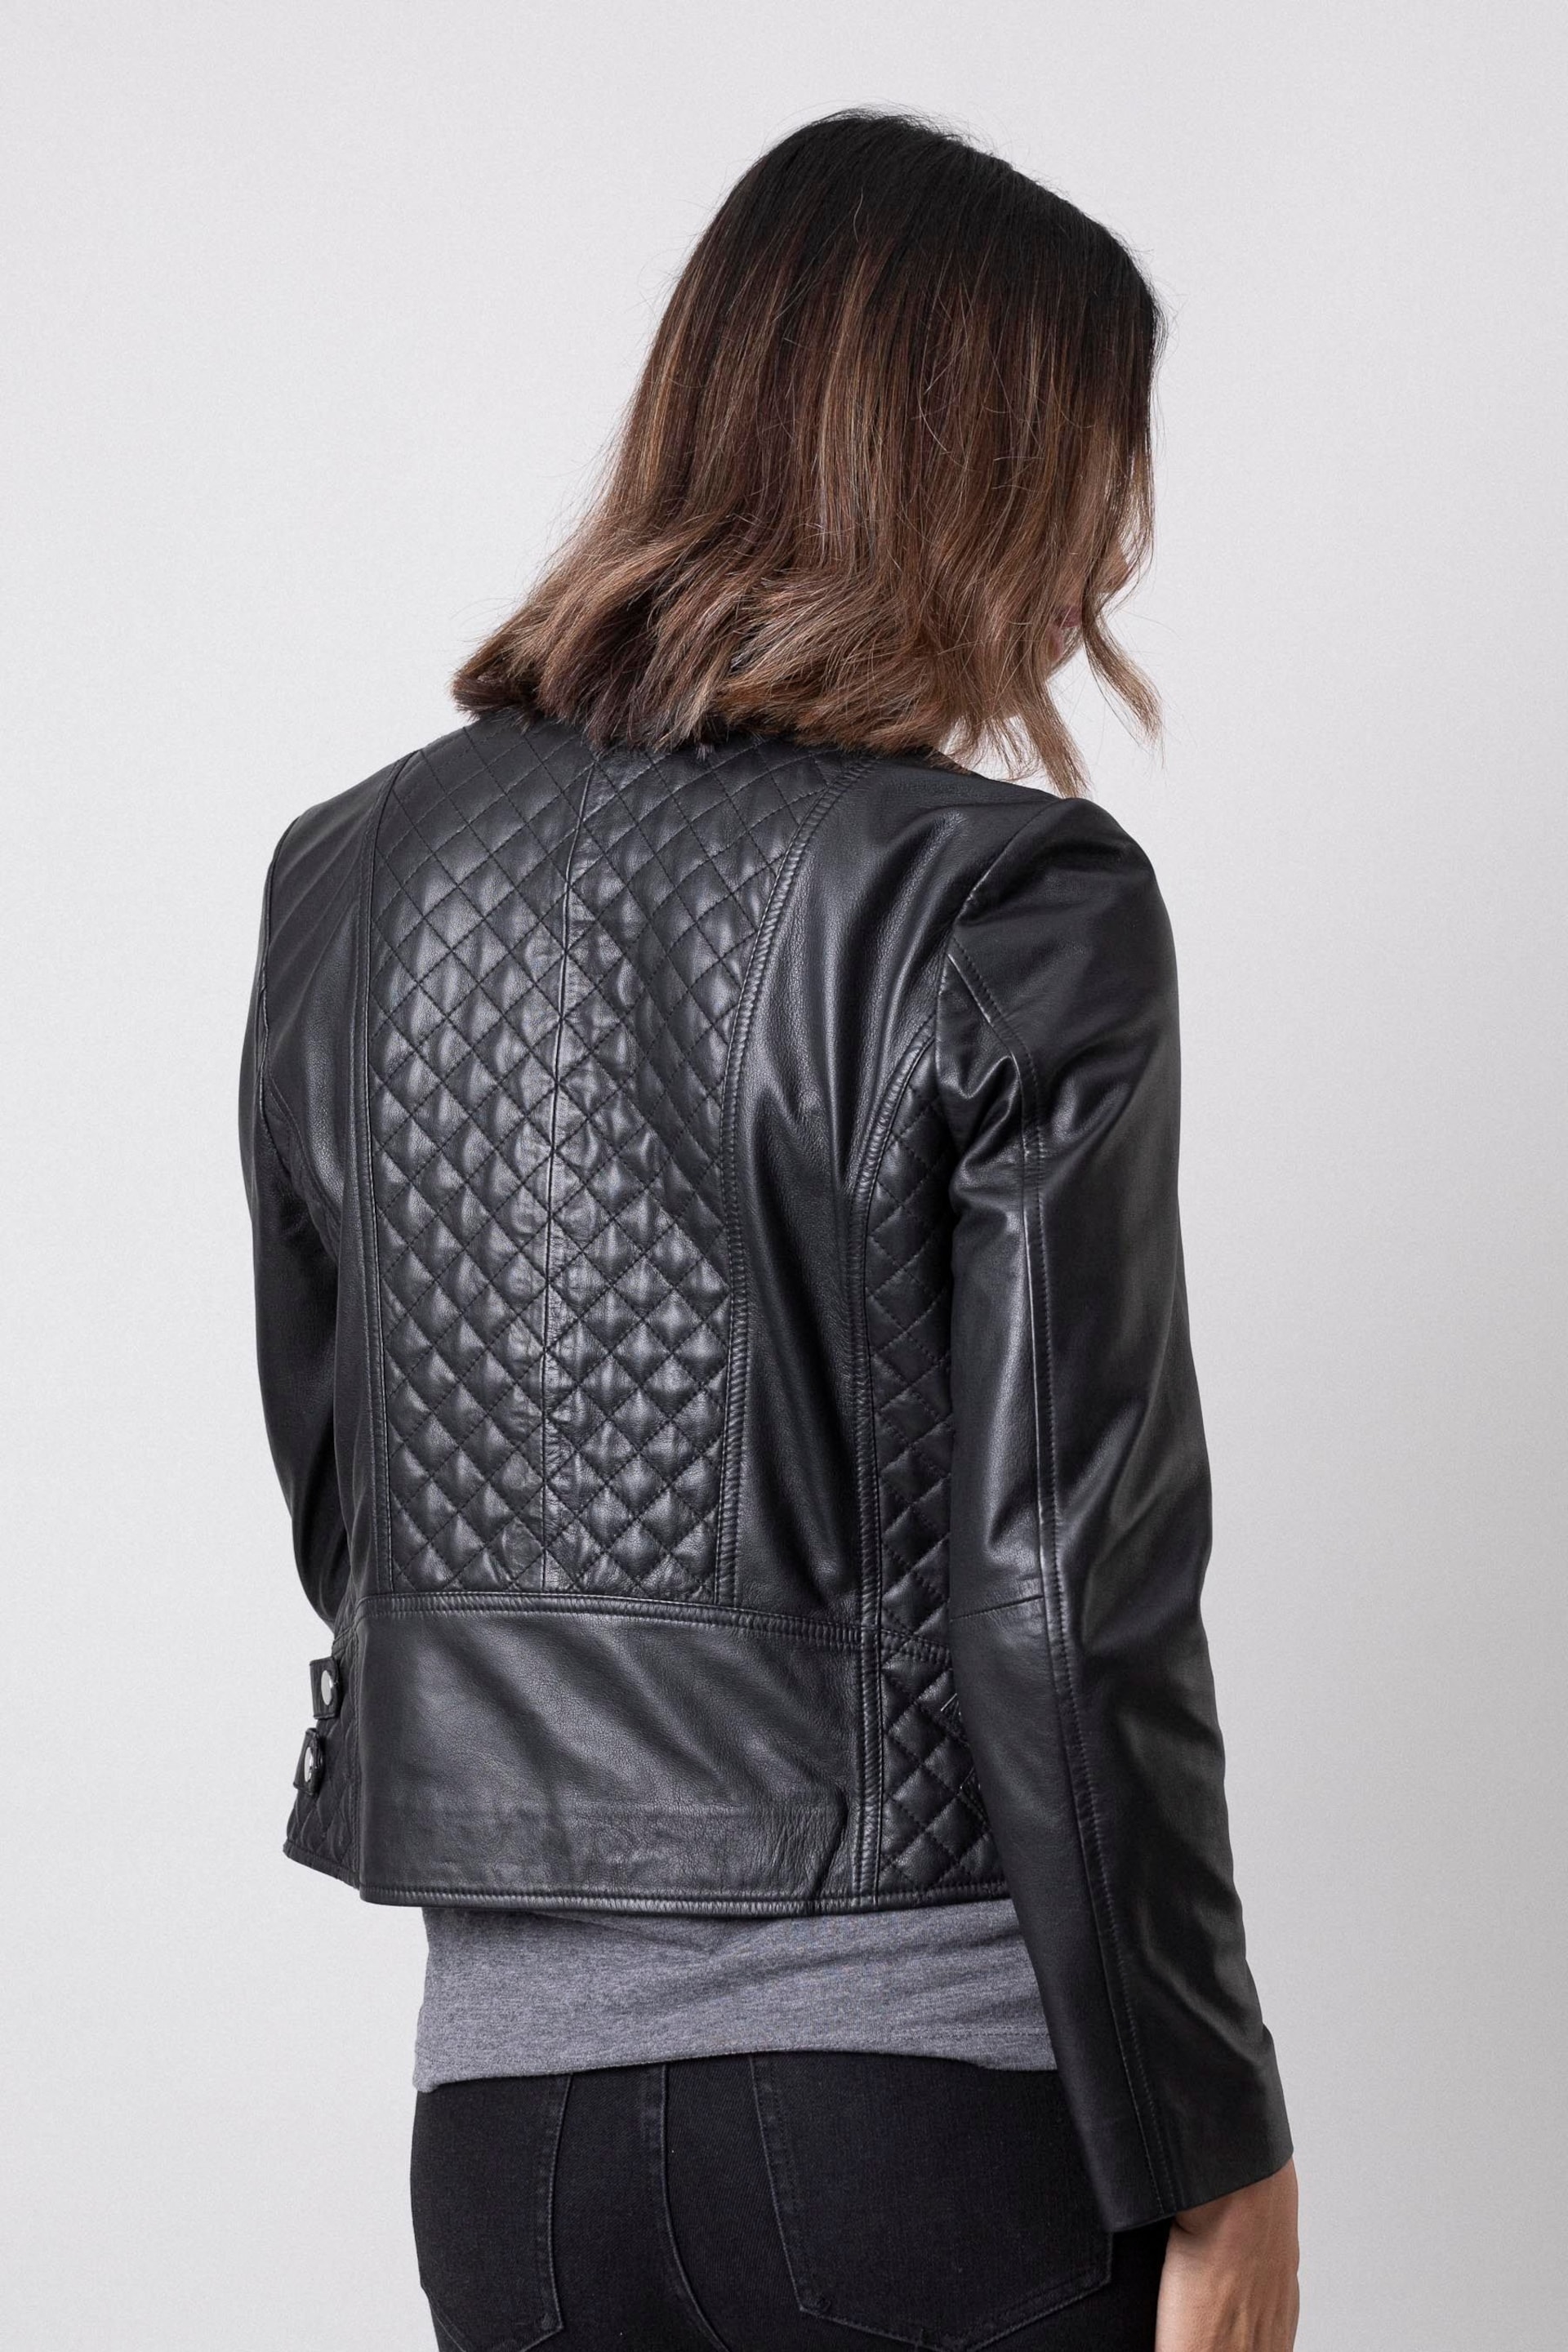 Lakeland Leather Black Devoke Leather Jacket - Image 4 of 14